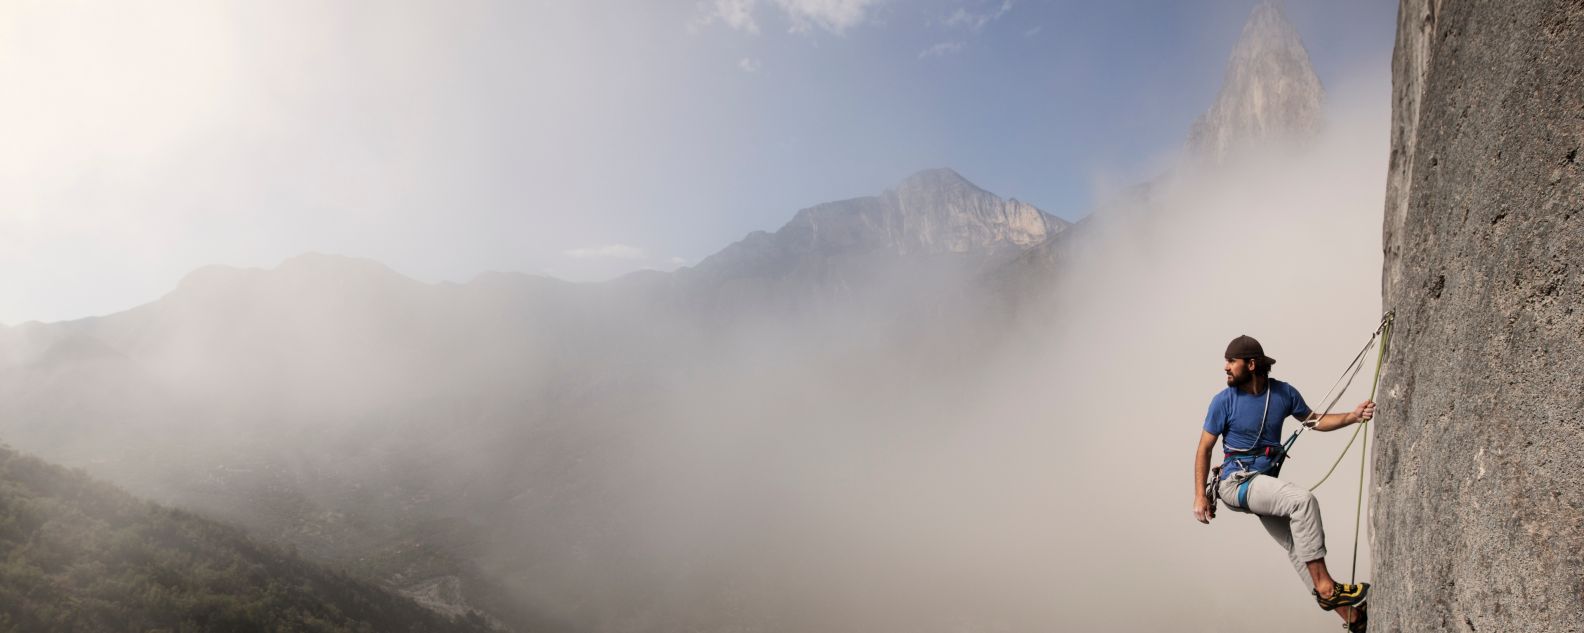 안개낀 산을 배경으로 등반 중에 혼자 휴식을 취하고 있는 남자